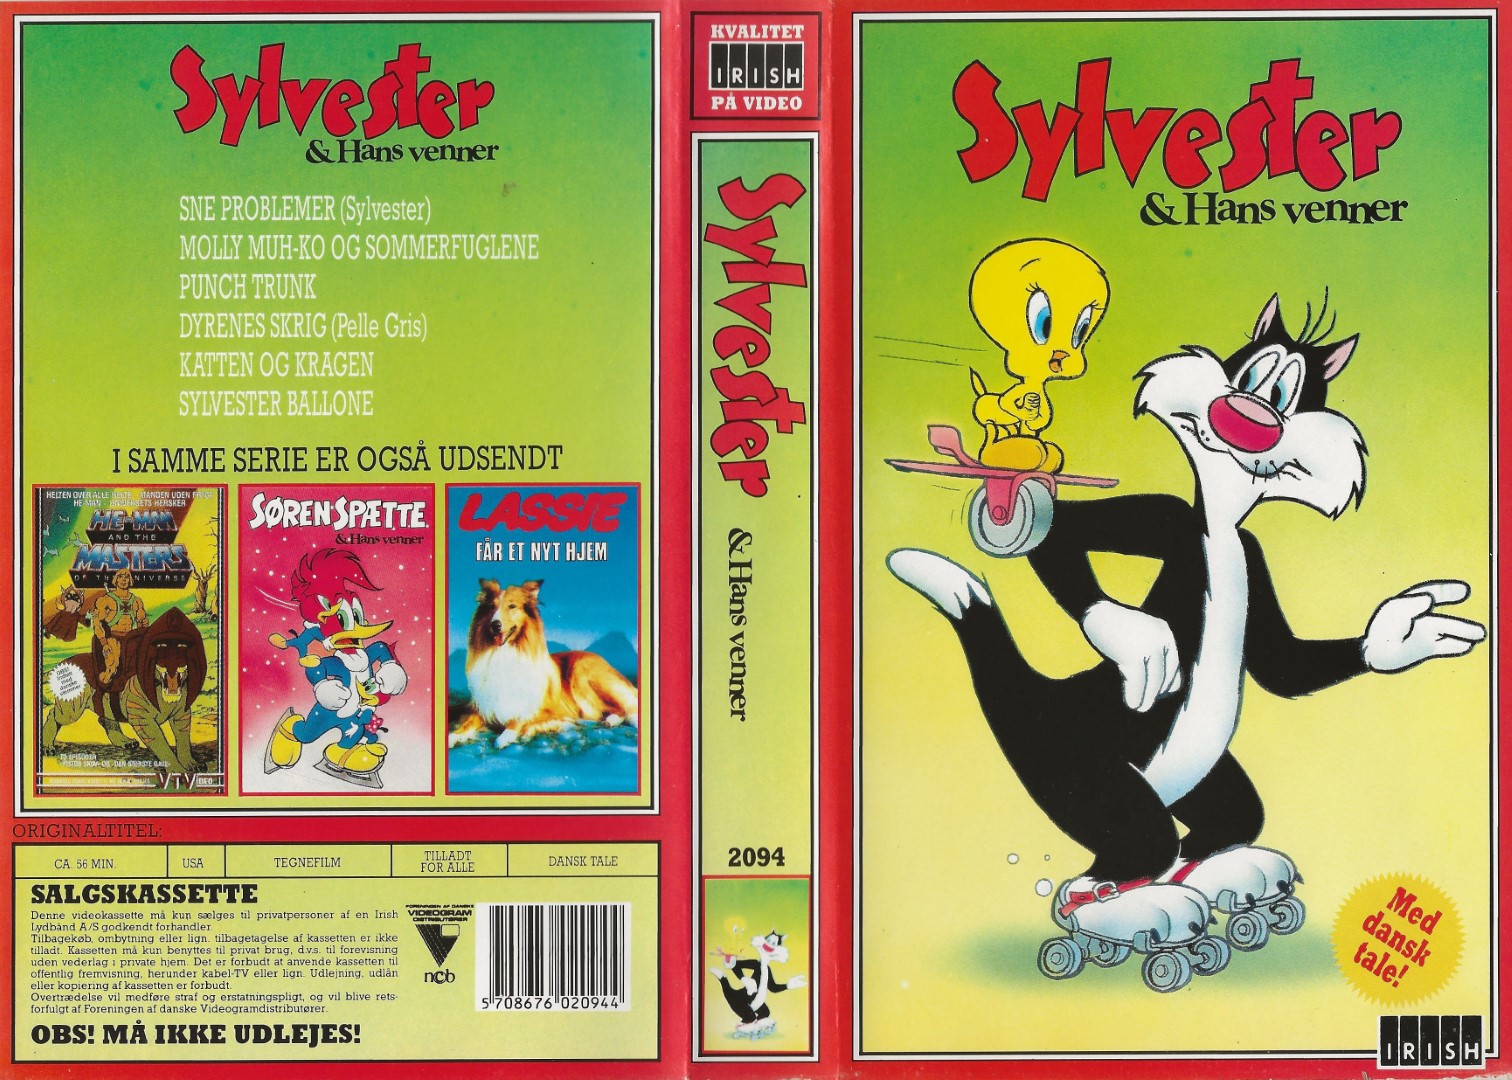 Sylvester & hans venner  VHS Irish 0